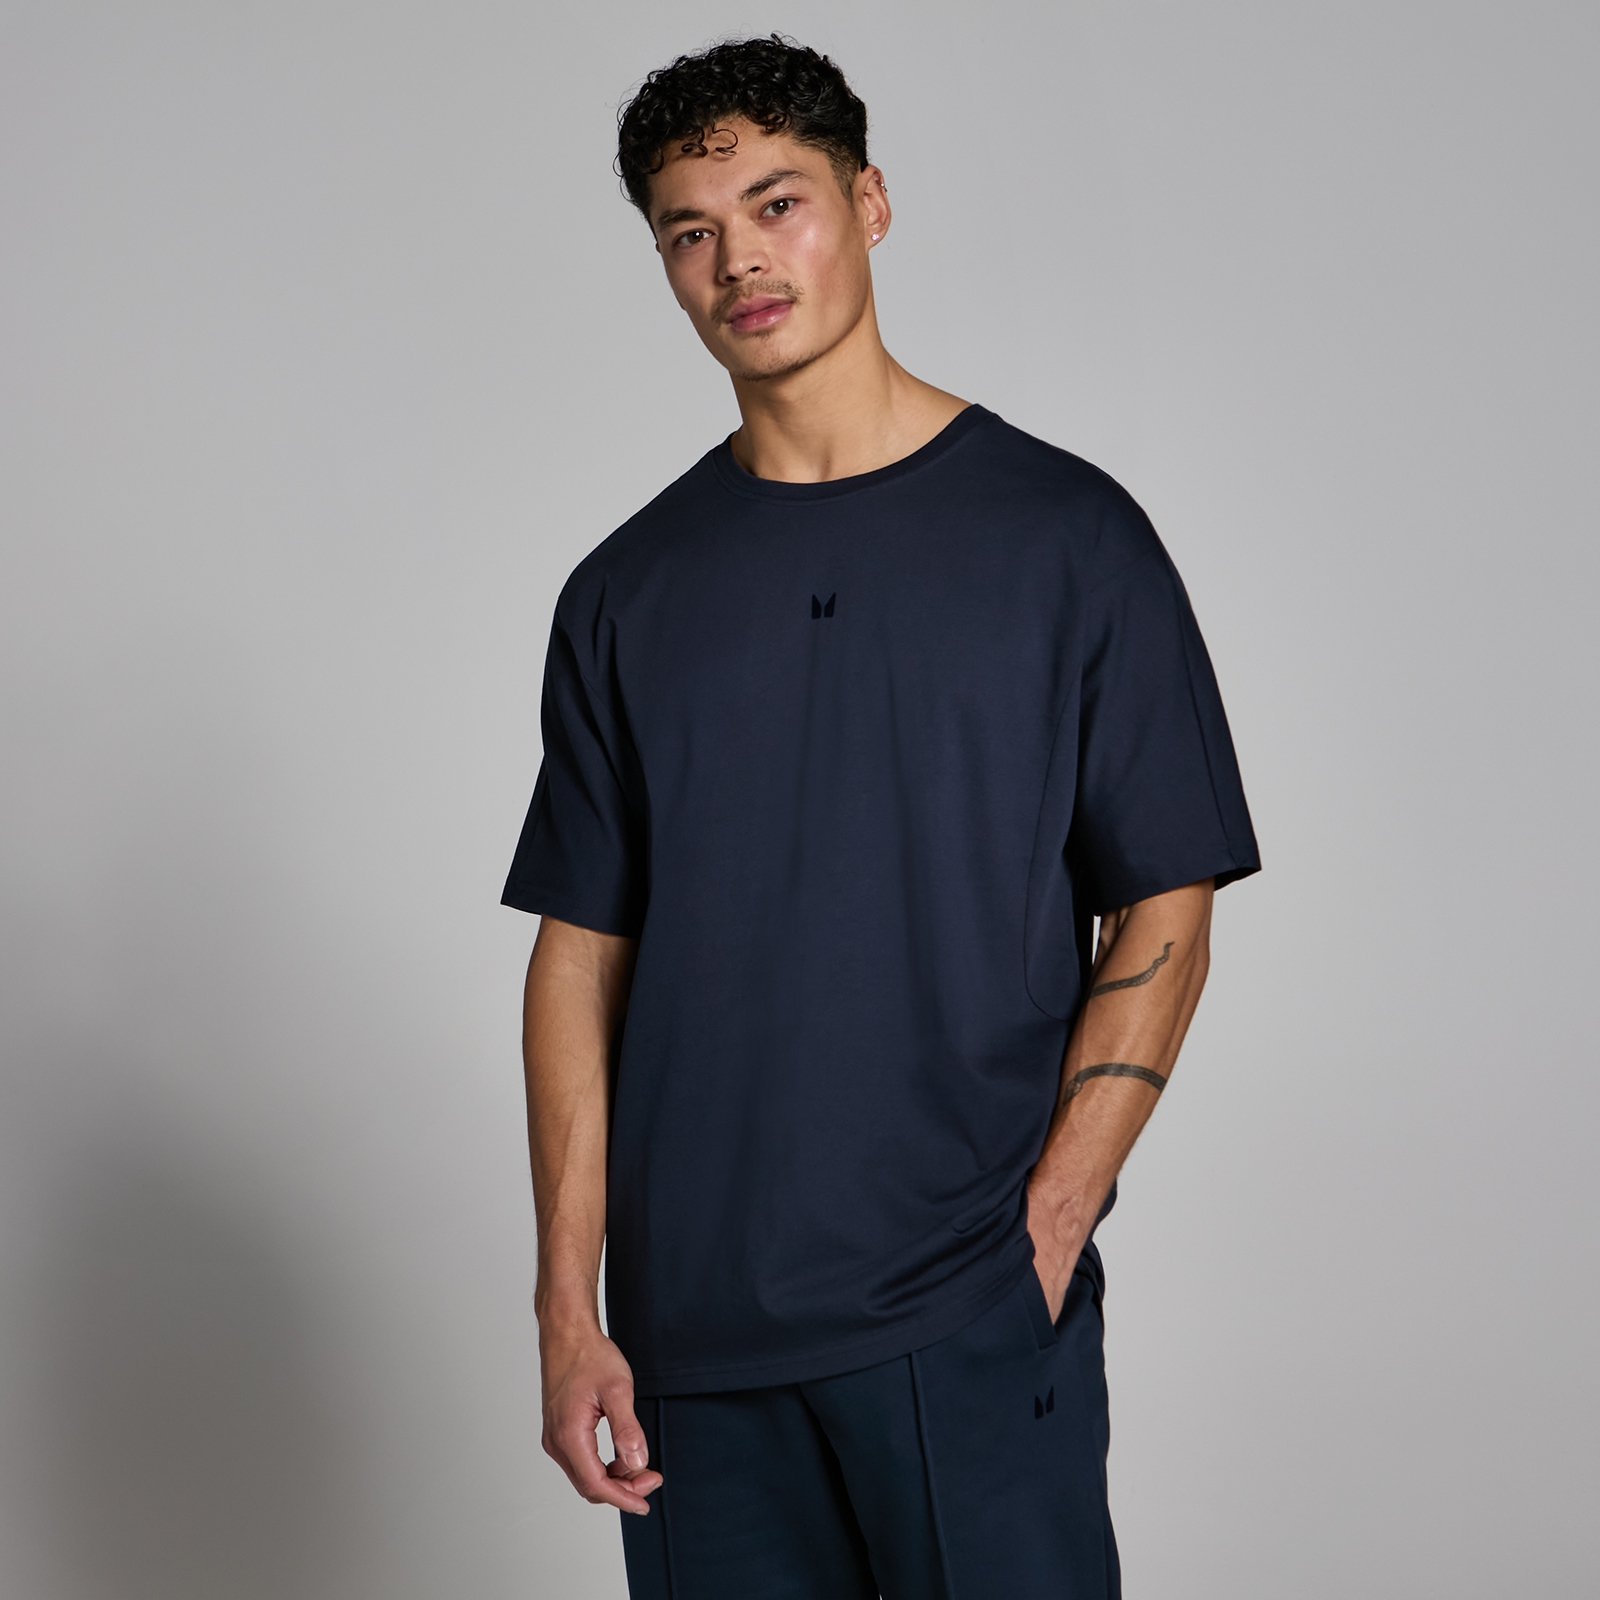 T-shirt oversize MP Lifestyle pour hommes – Bleu marine foncé - XS